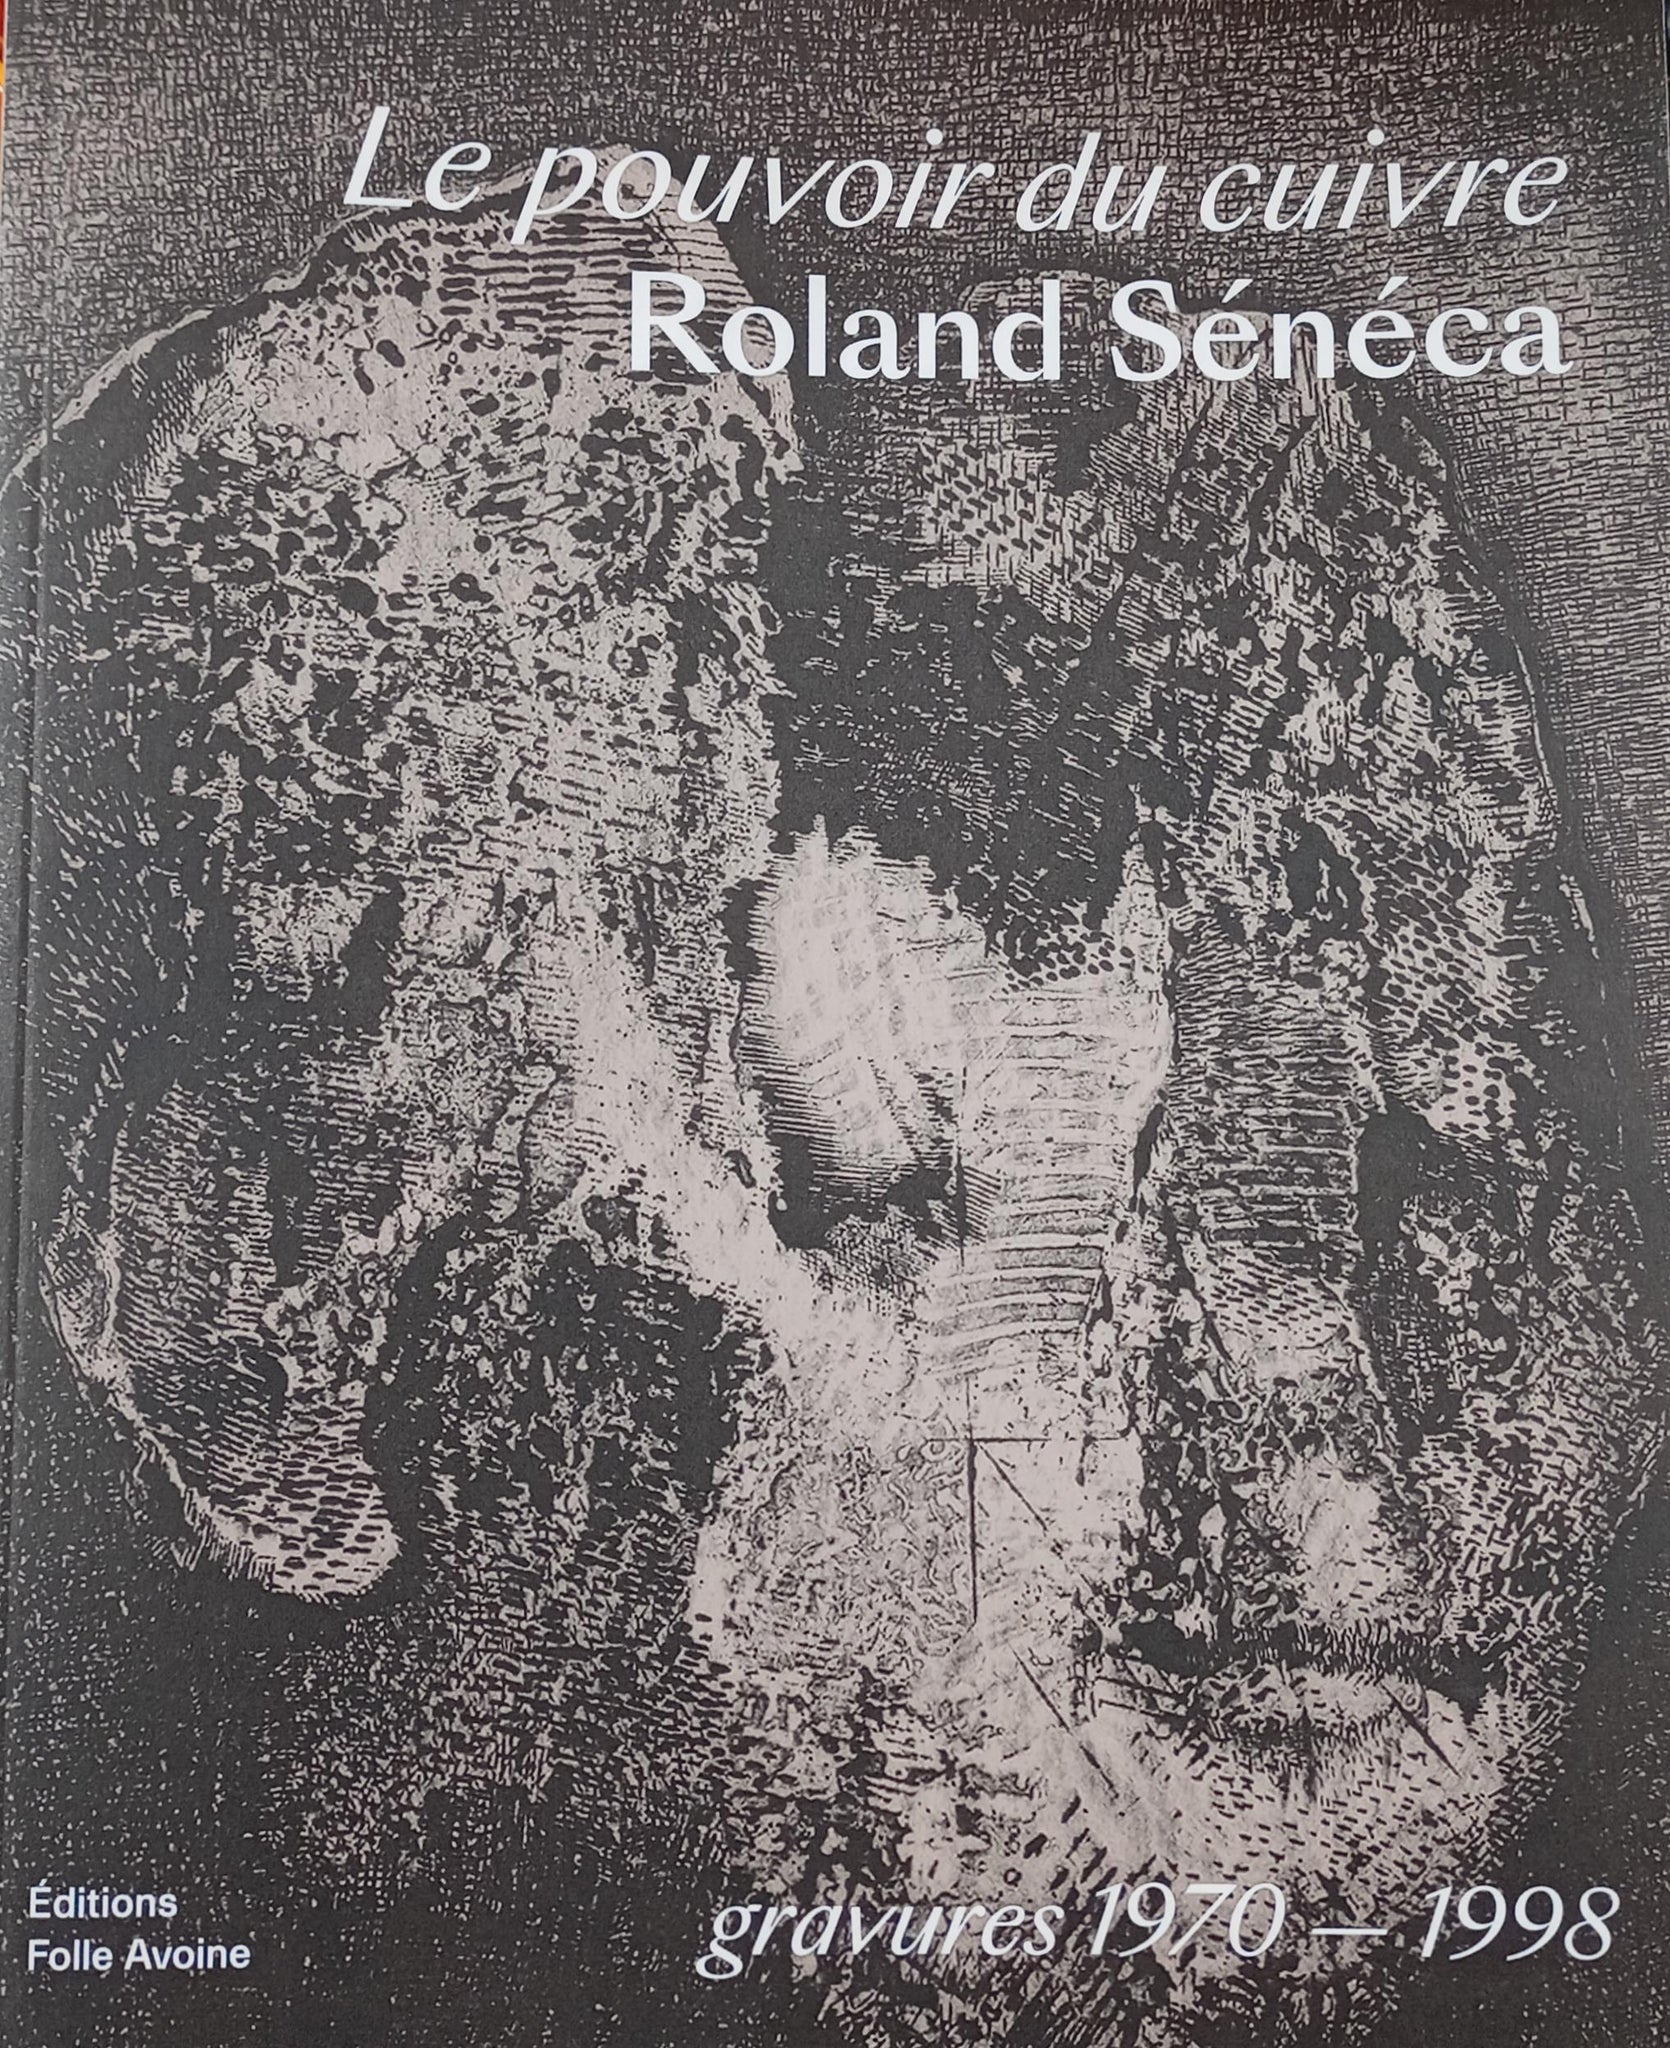 Le pouvoir du cuivre. Roland Sénéca, gravures 1970-1988.